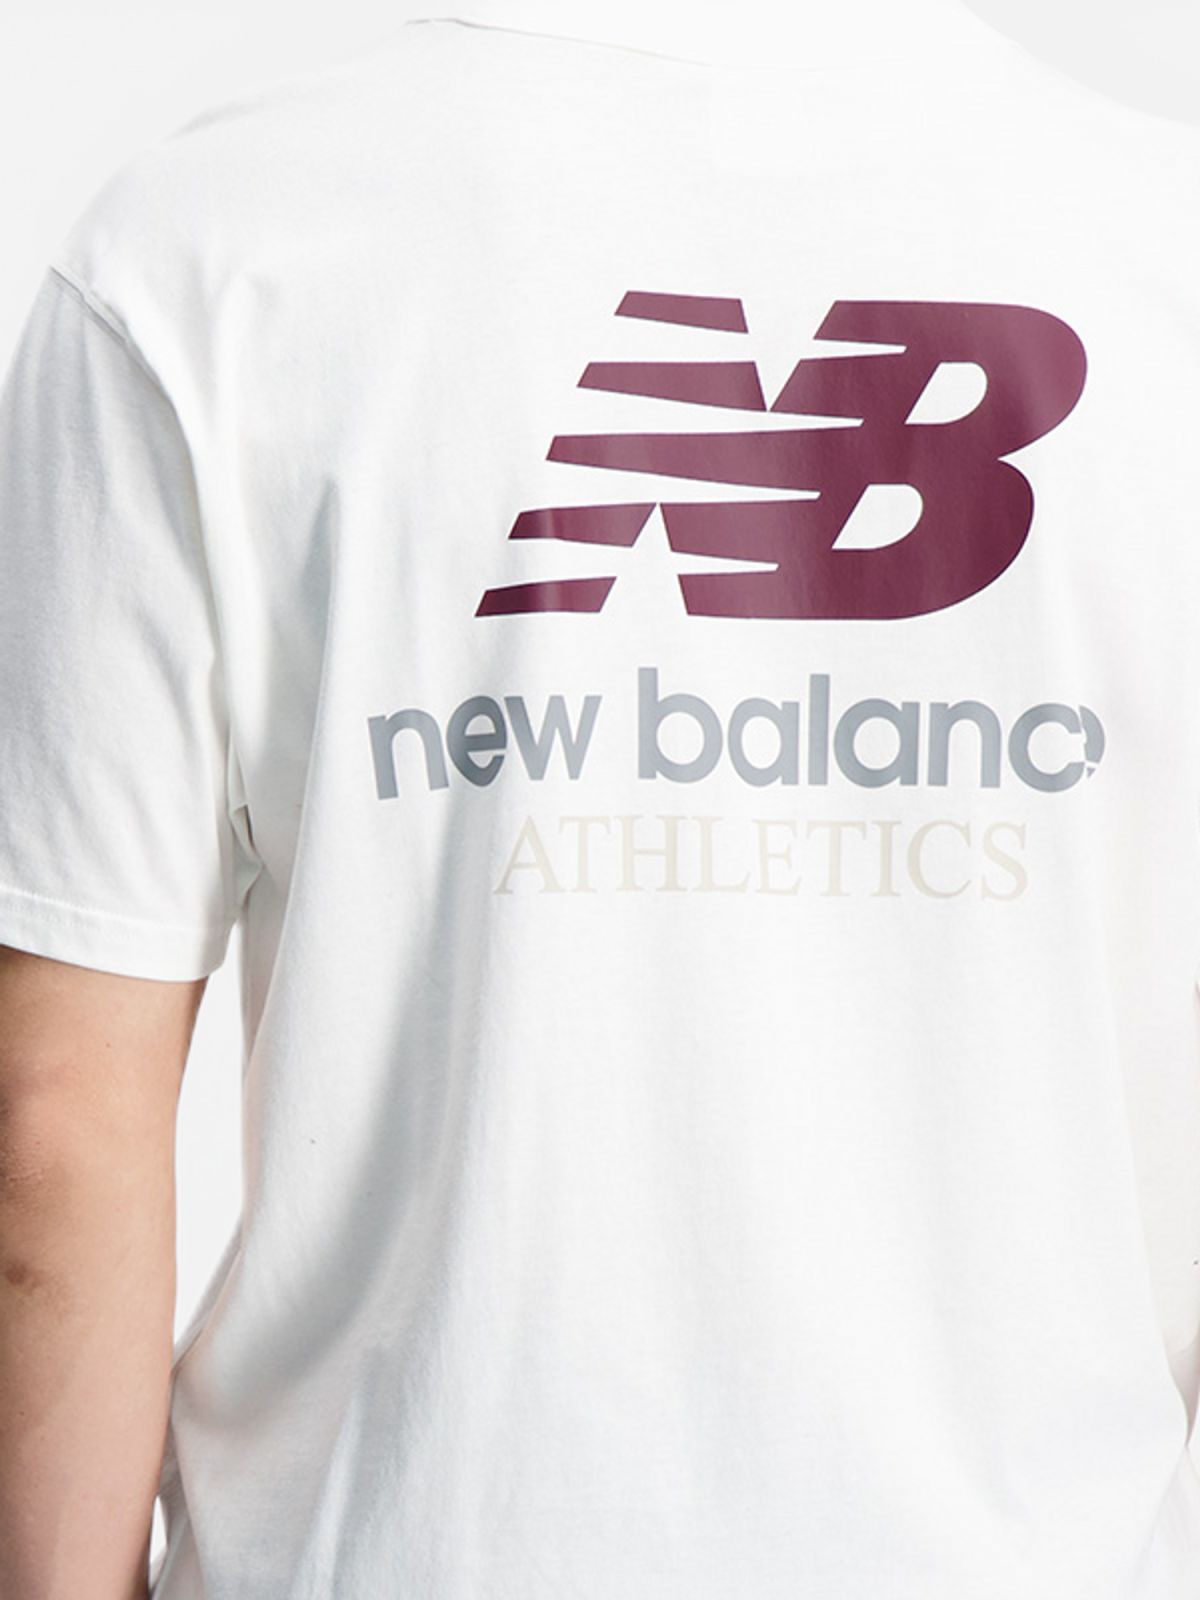  טי שירט עם לוגו של NEW BALANCE